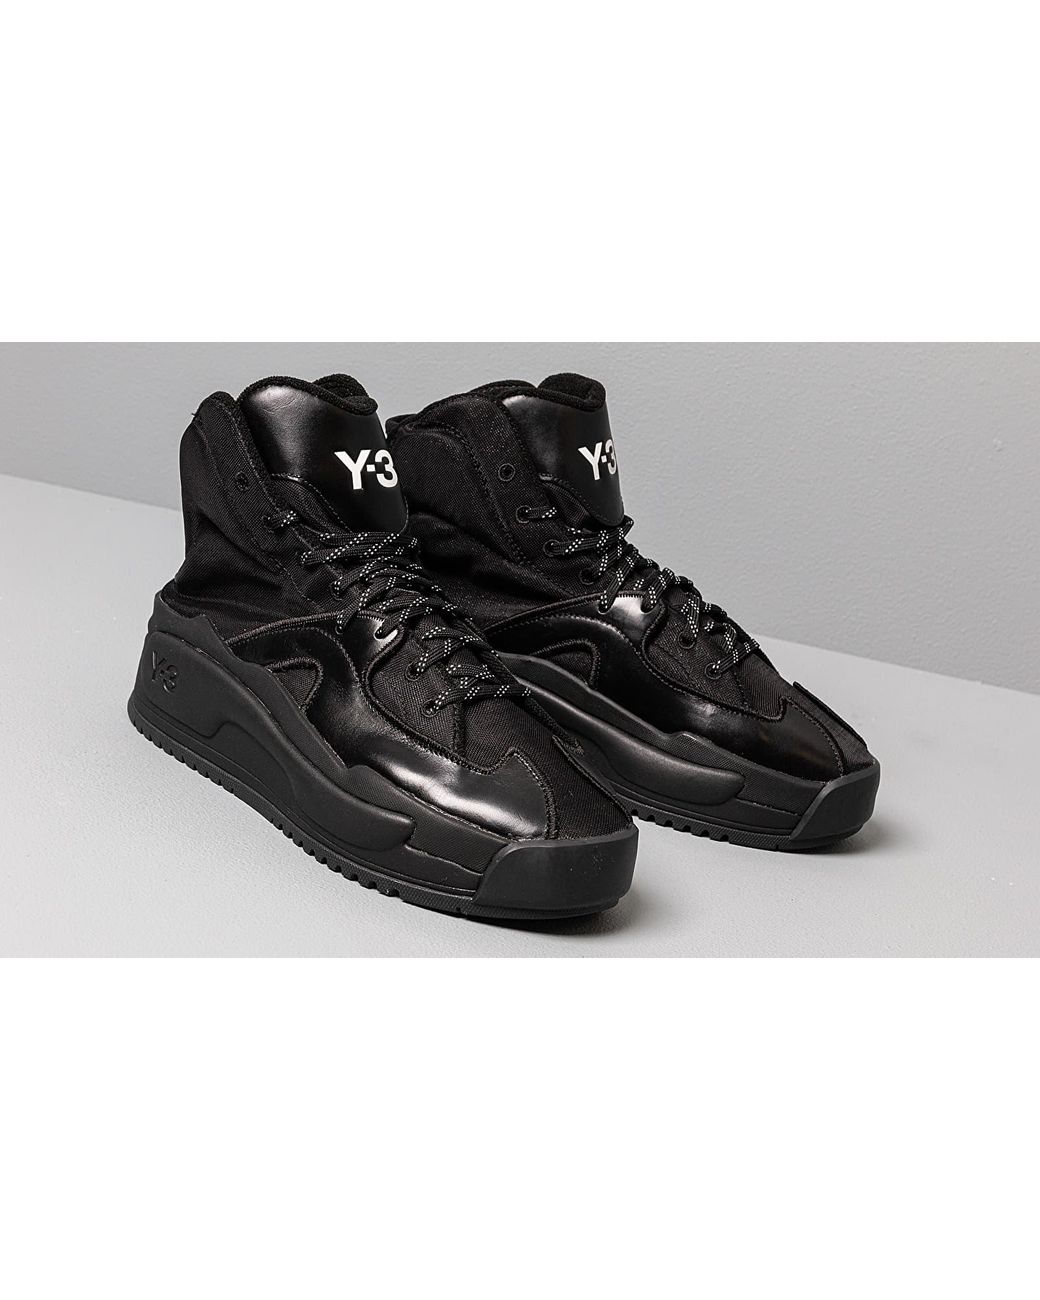 Y-3 Hokori Black-y3/ Black-y3/ Black-y3 | Lyst